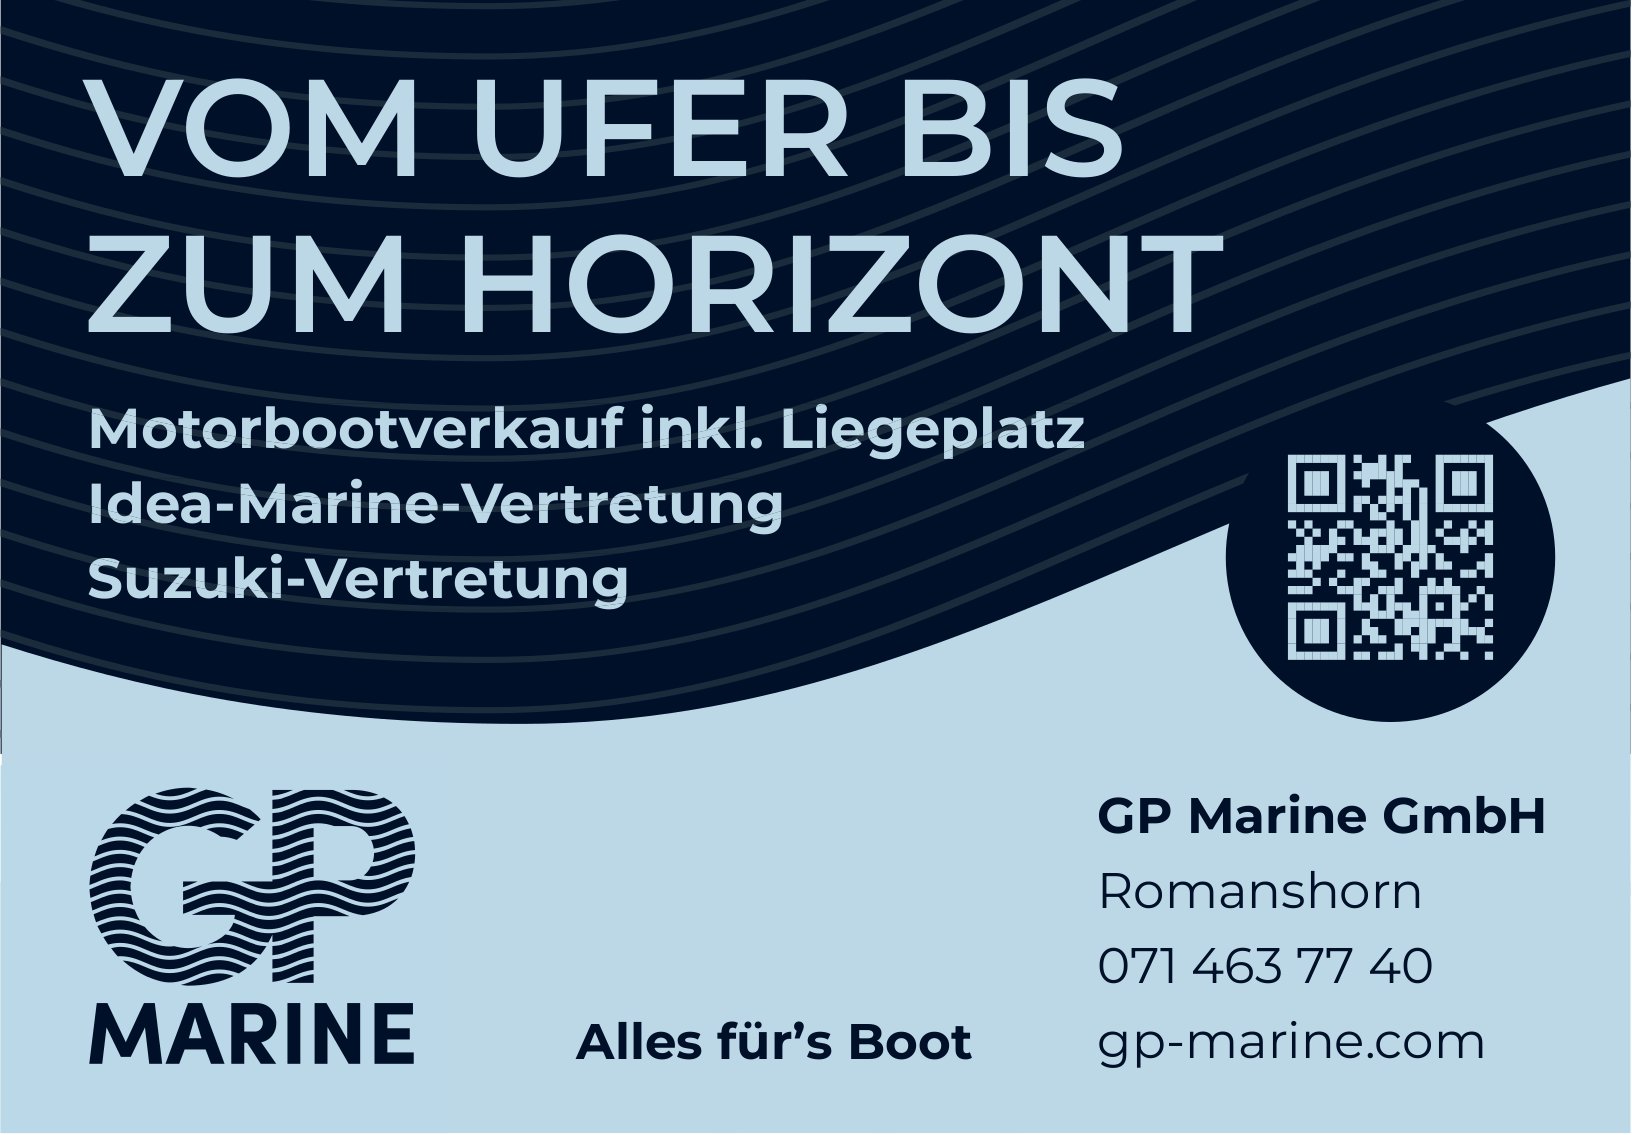 GP Marine GmbH, Romanshorn - Motorbootverkauf inkl. Liegeplatz Idea-Marine-Vertretung Suzuki-Vertretung